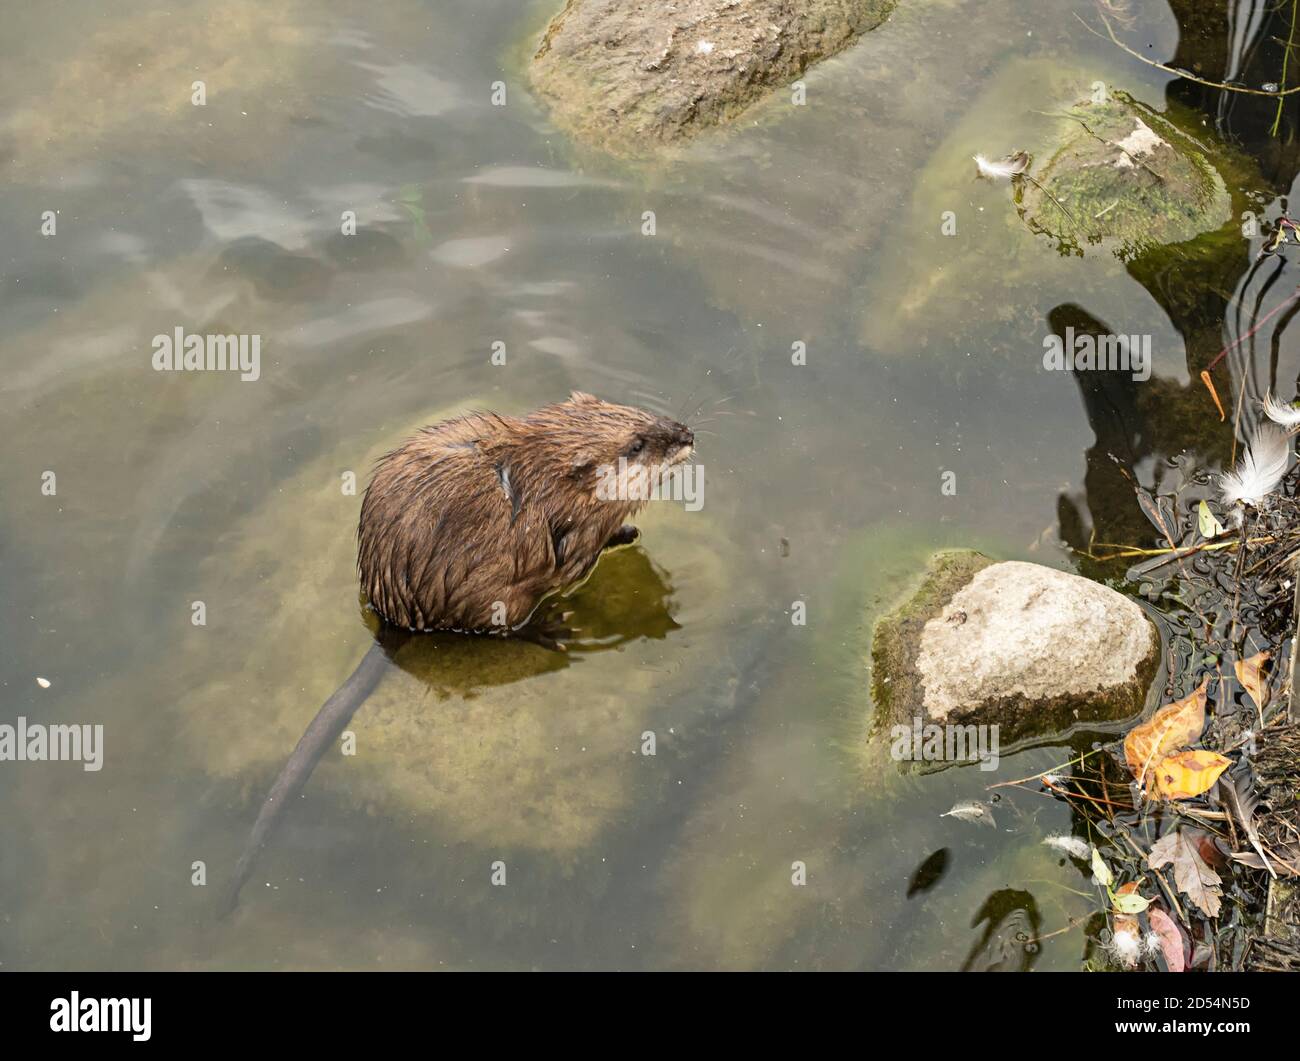 Un nutria, ou rat musqué, s'assoit sur une roche dans un étang, quelques gouttelettes visibles où il a secoué hors de l'eau Banque D'Images